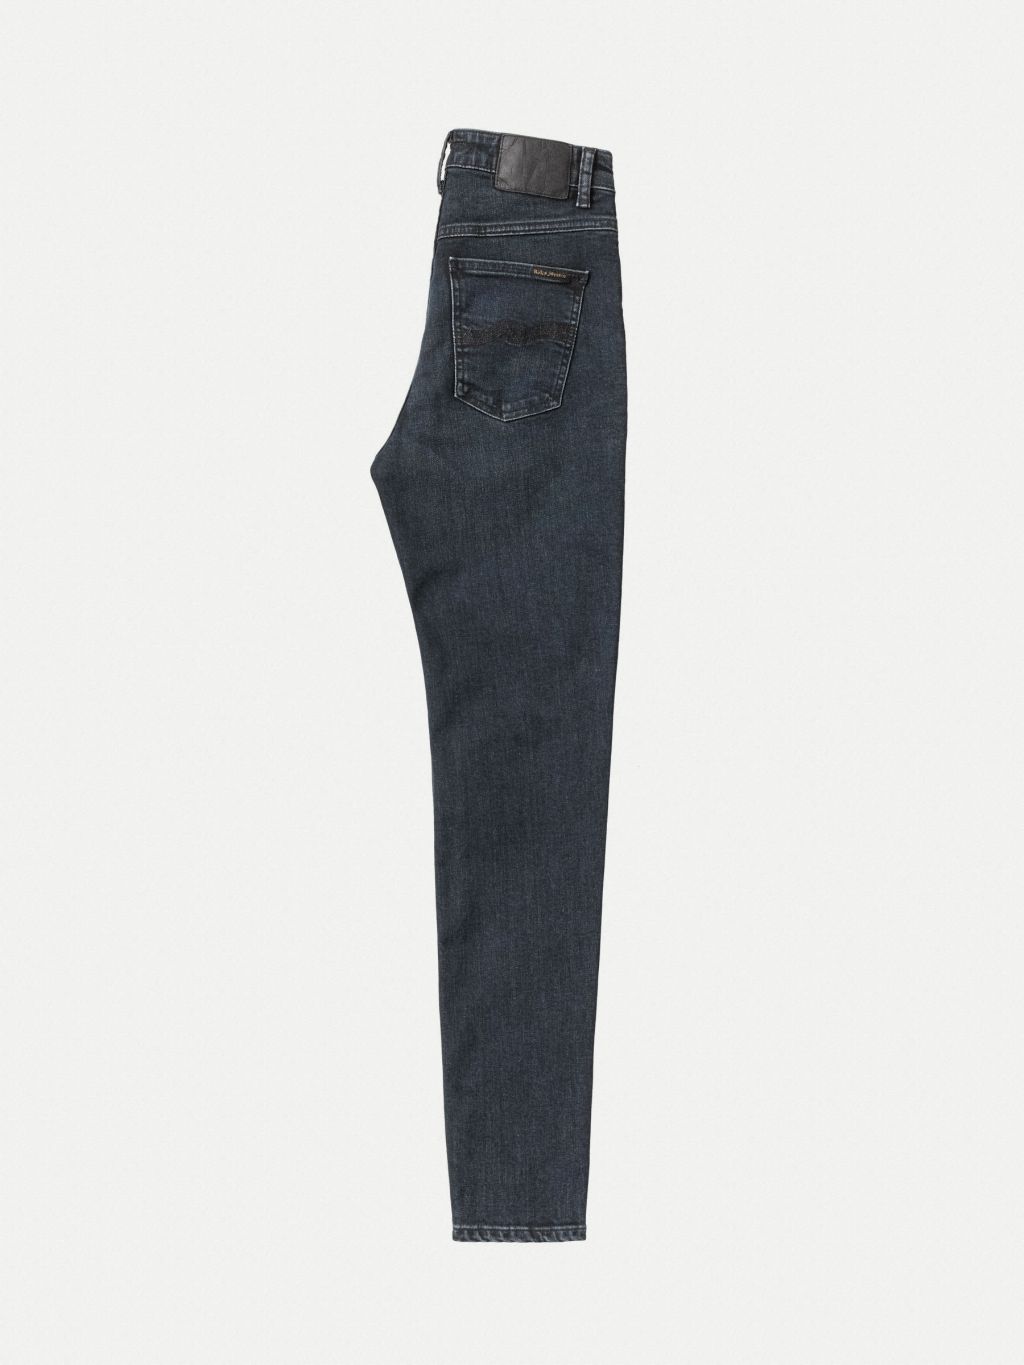 Hightop Tilde High Waist Jeans - Blue Quartz 28/28